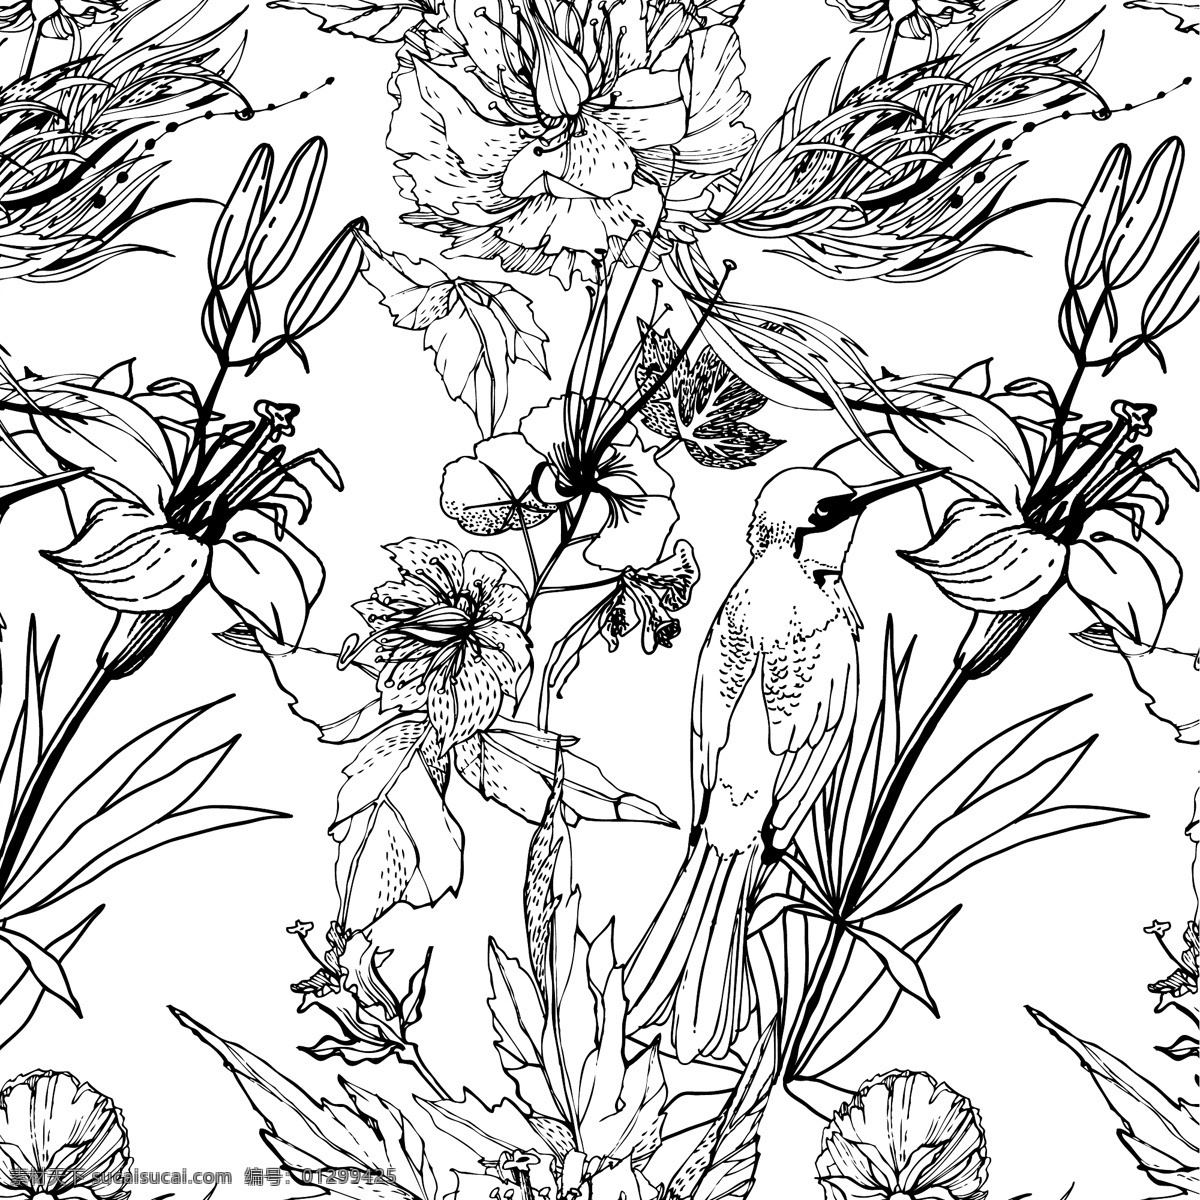 黑白 手绘 花鸟 花卉 矢量图 格式 矢量 高清图片